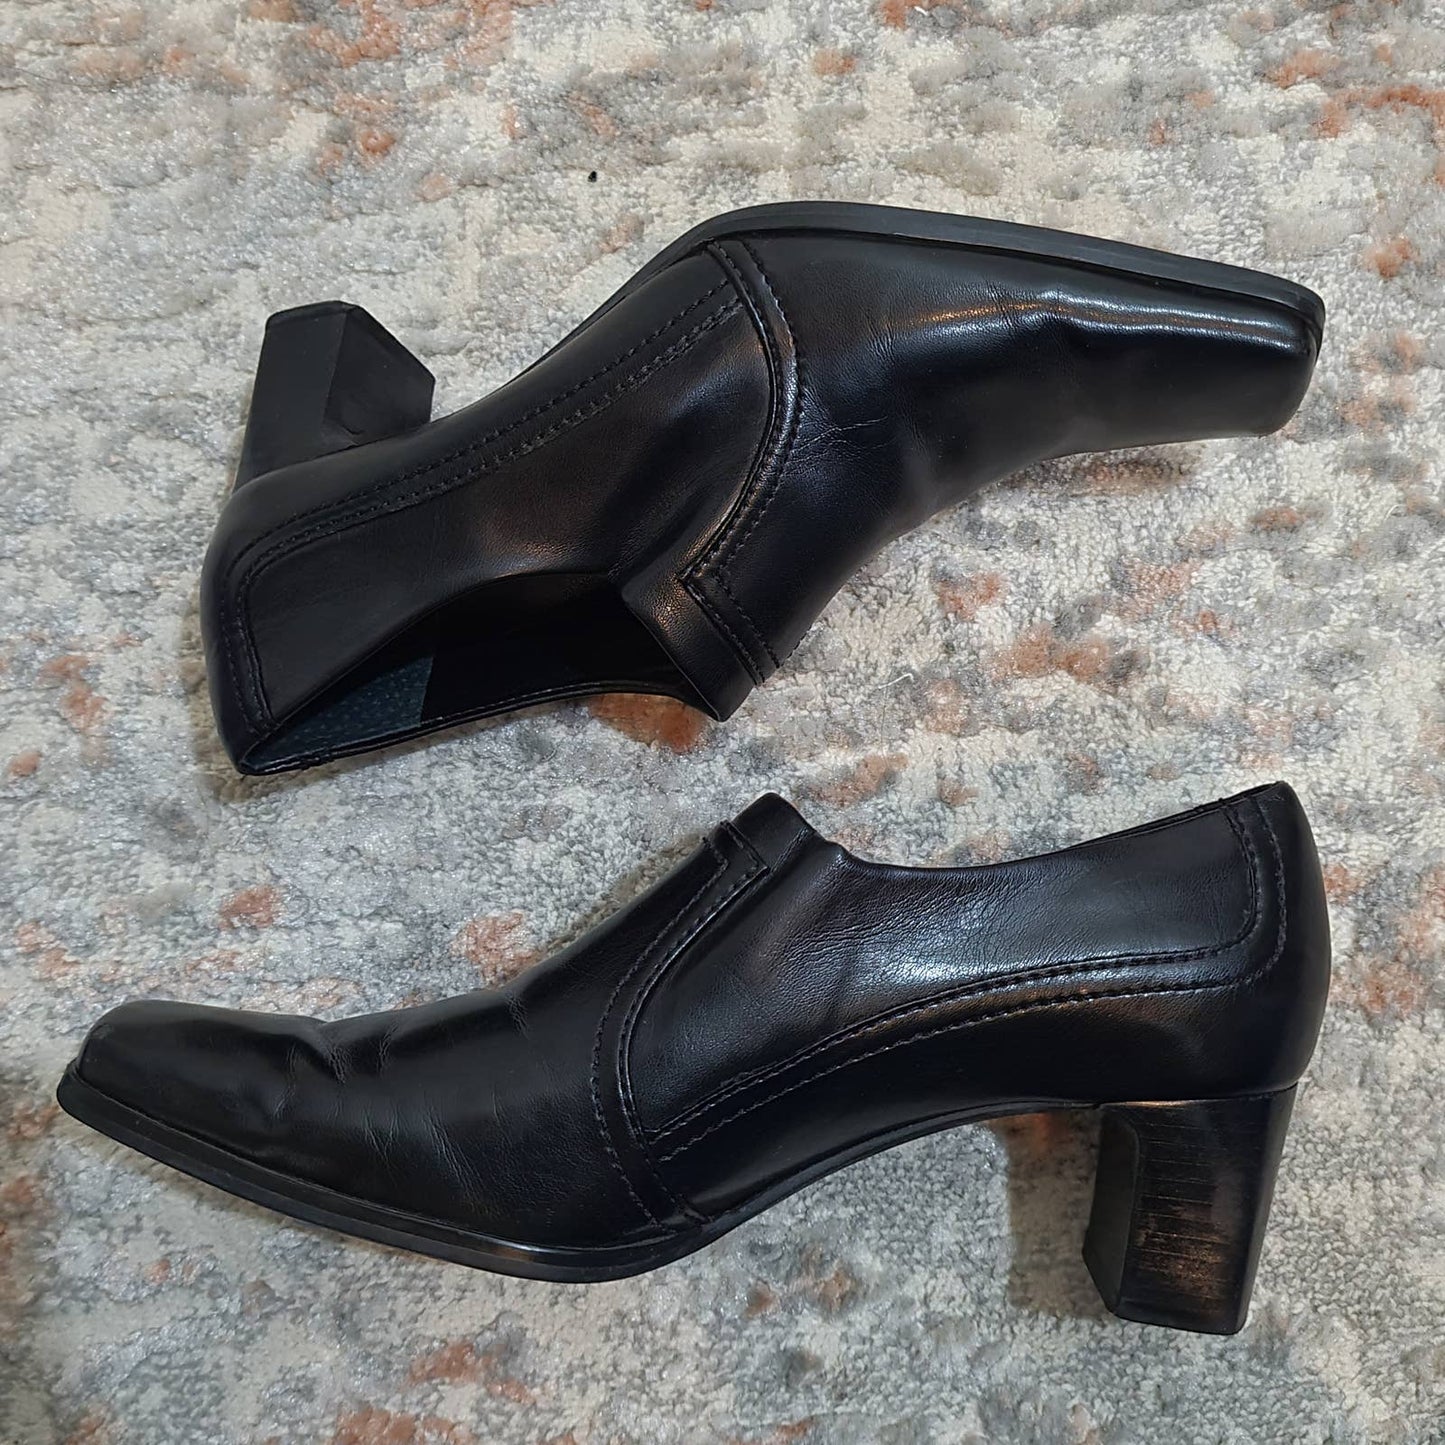 Franco Sarto Black Leather Bootie Heels - Size 6.5Markita's ClosetFranco Sarto